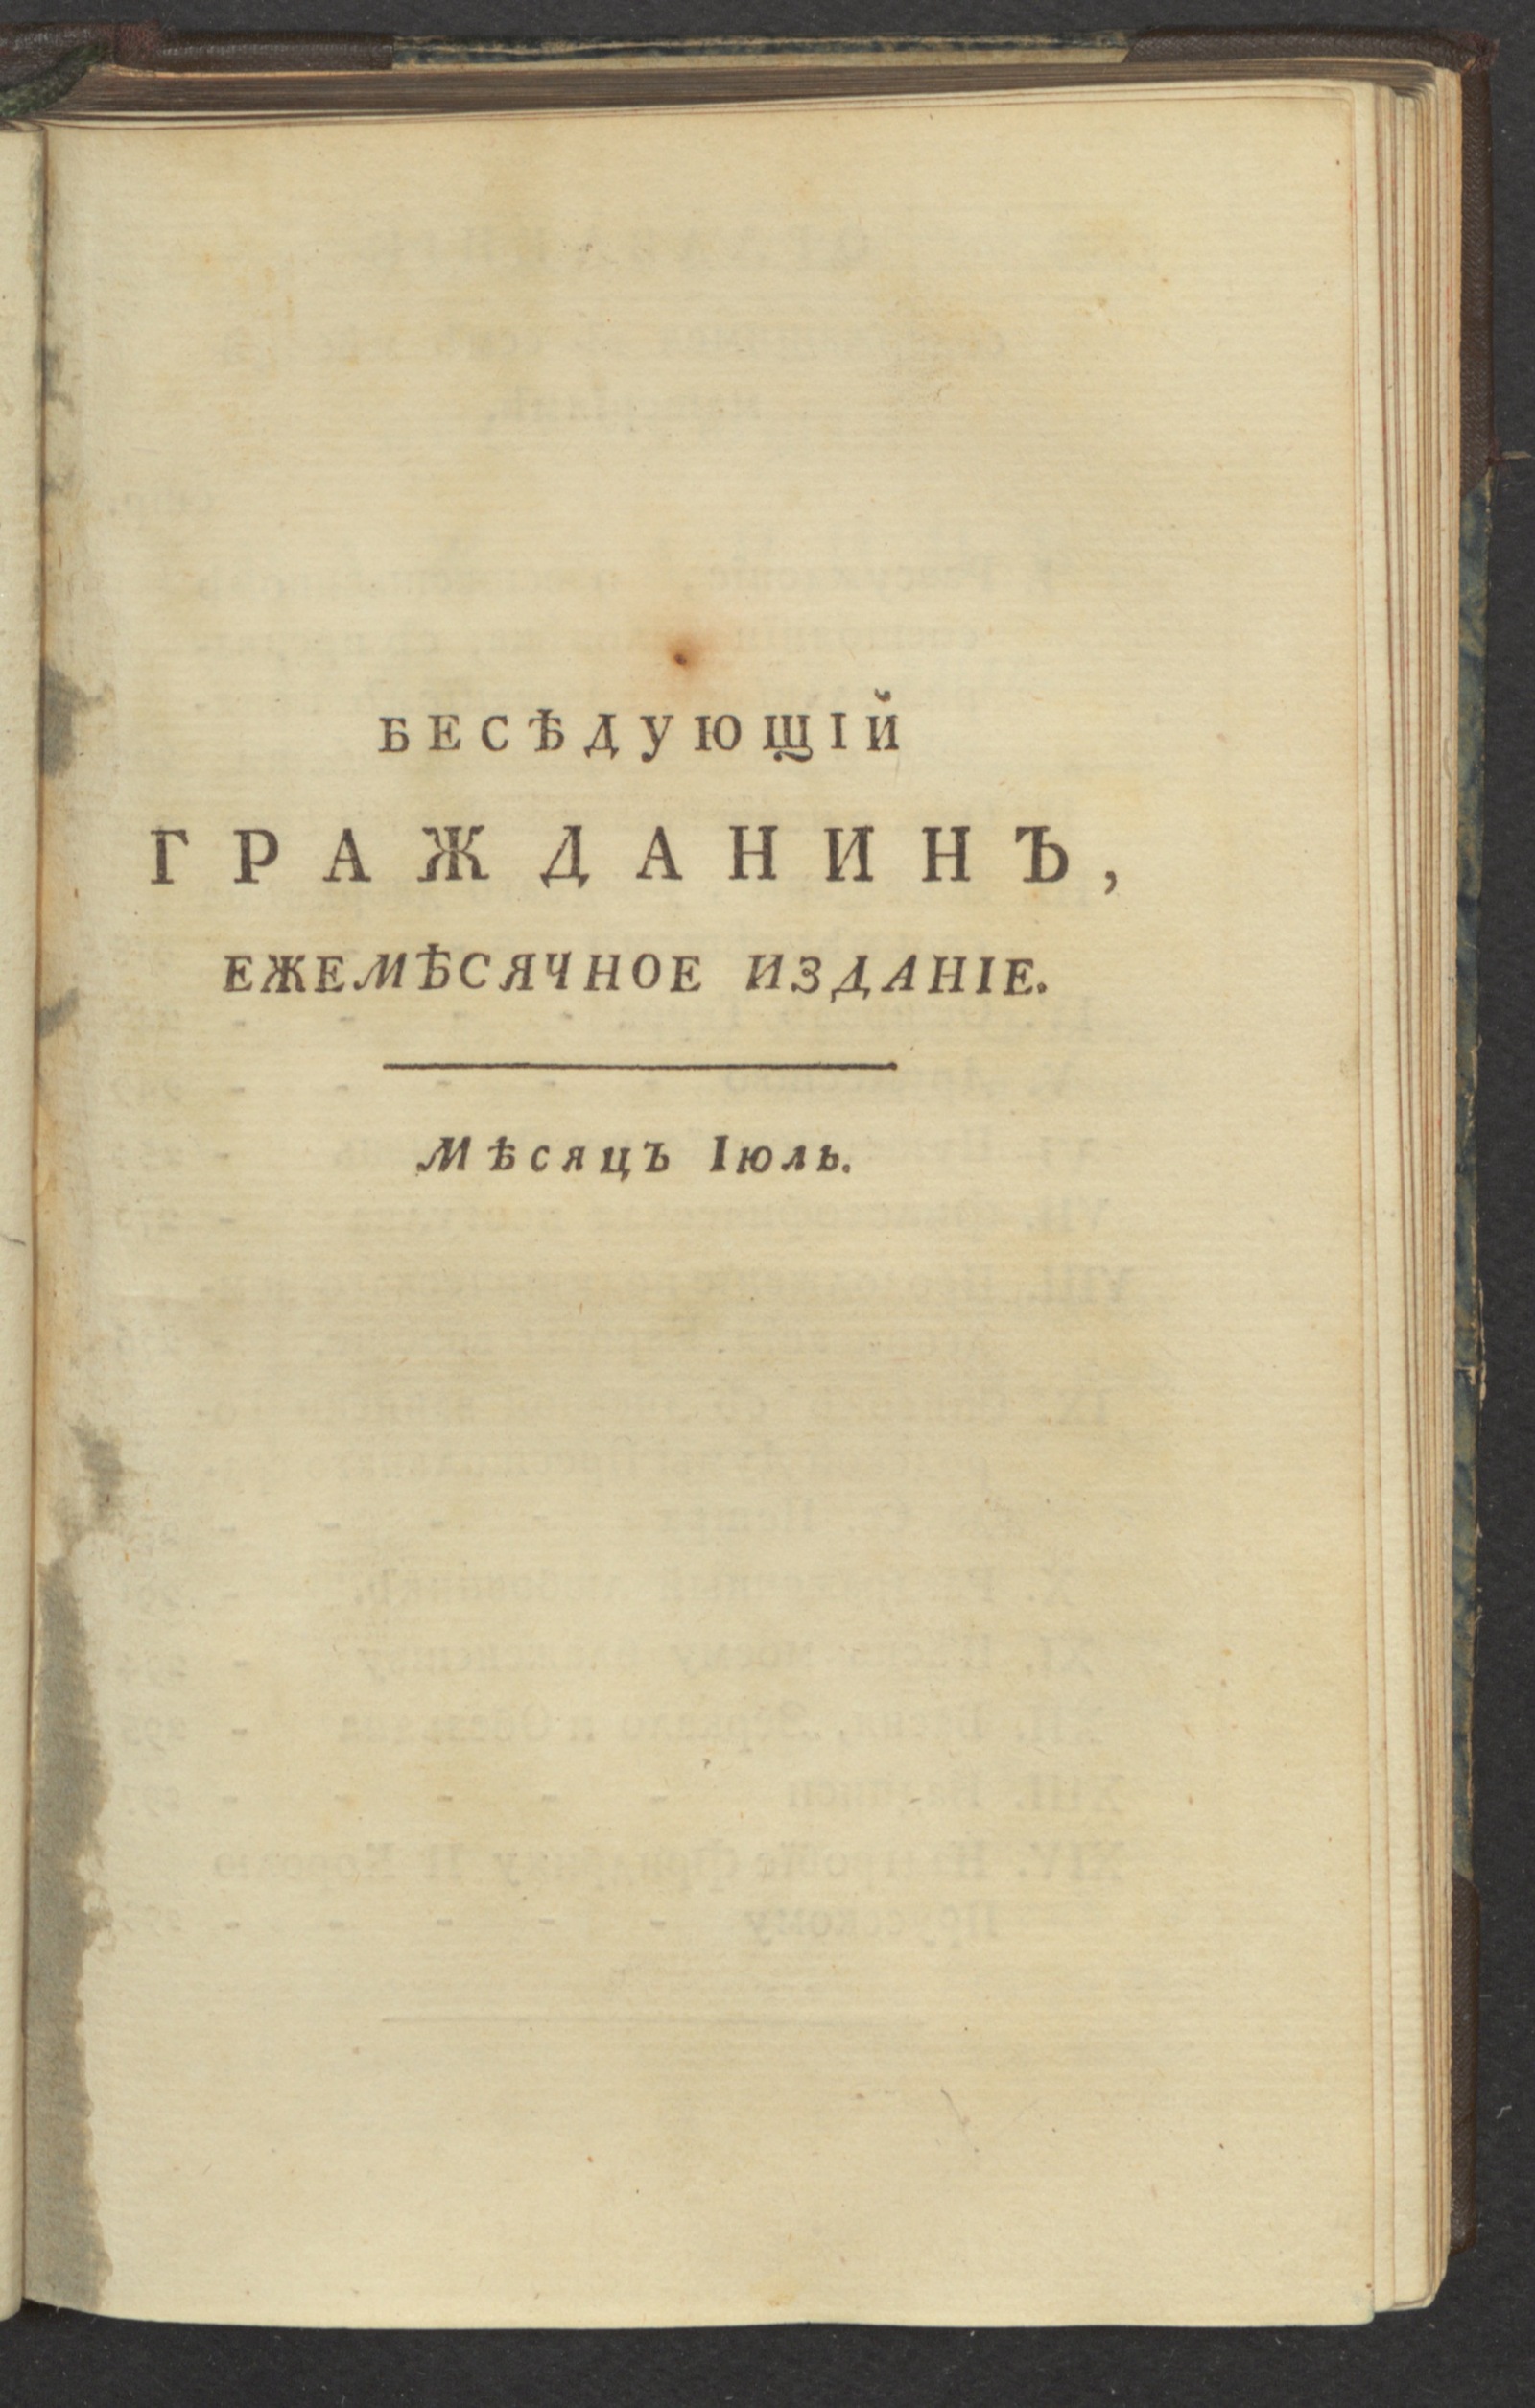 Изображение книги Беседующий гражданин. Ч. 2. [1789], июль